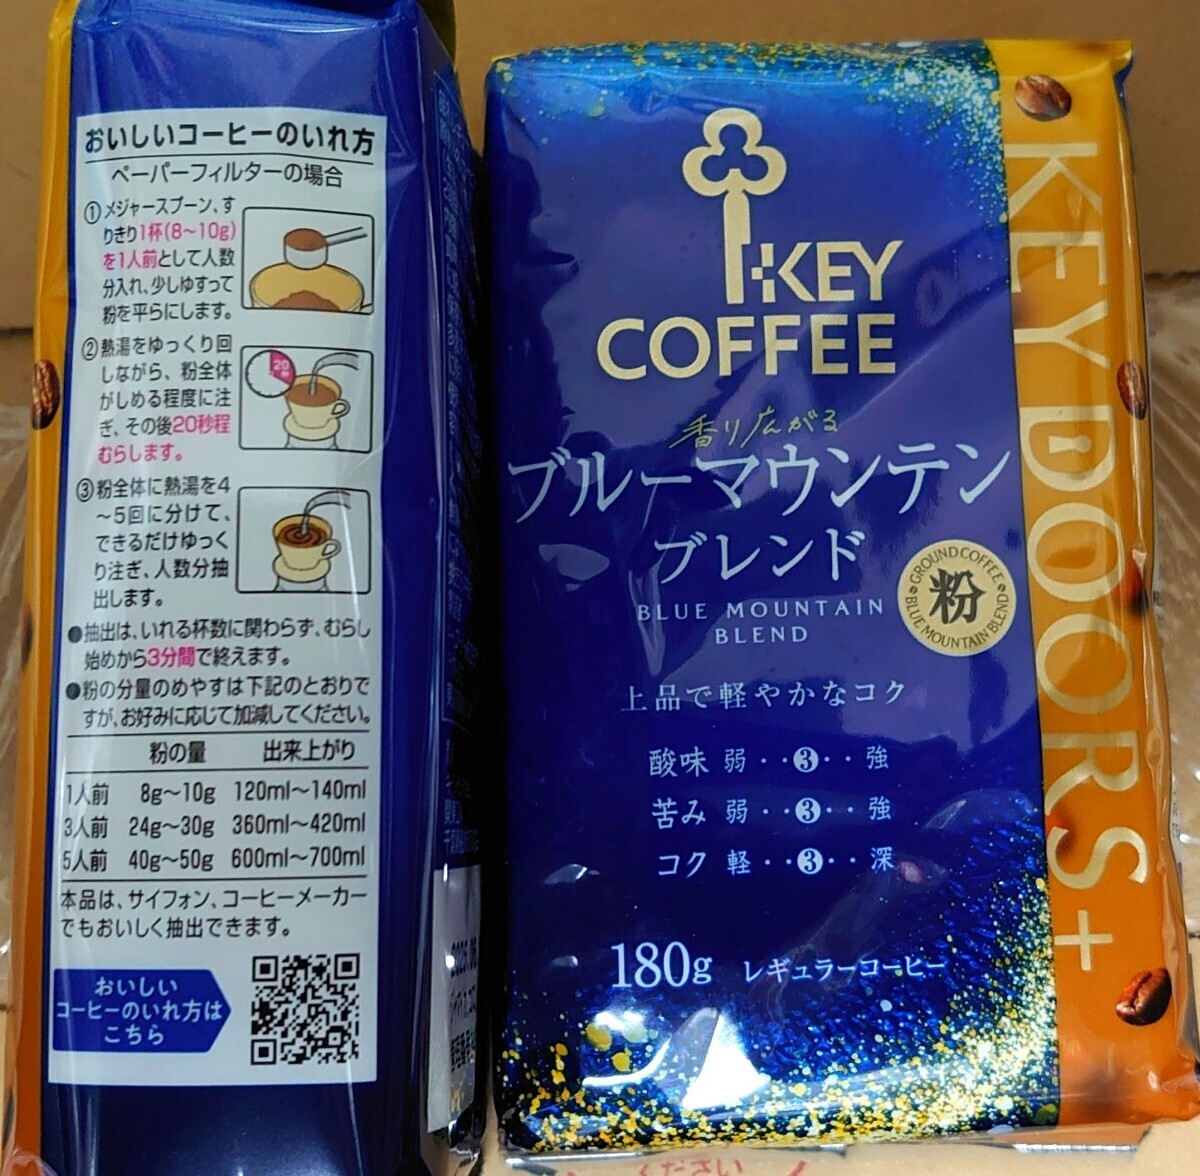 キーコーヒー 香り広がるブルーマウンテンブレンド 粉 180g×2個セット レギュラーコーヒー KEY COFFEEの画像3